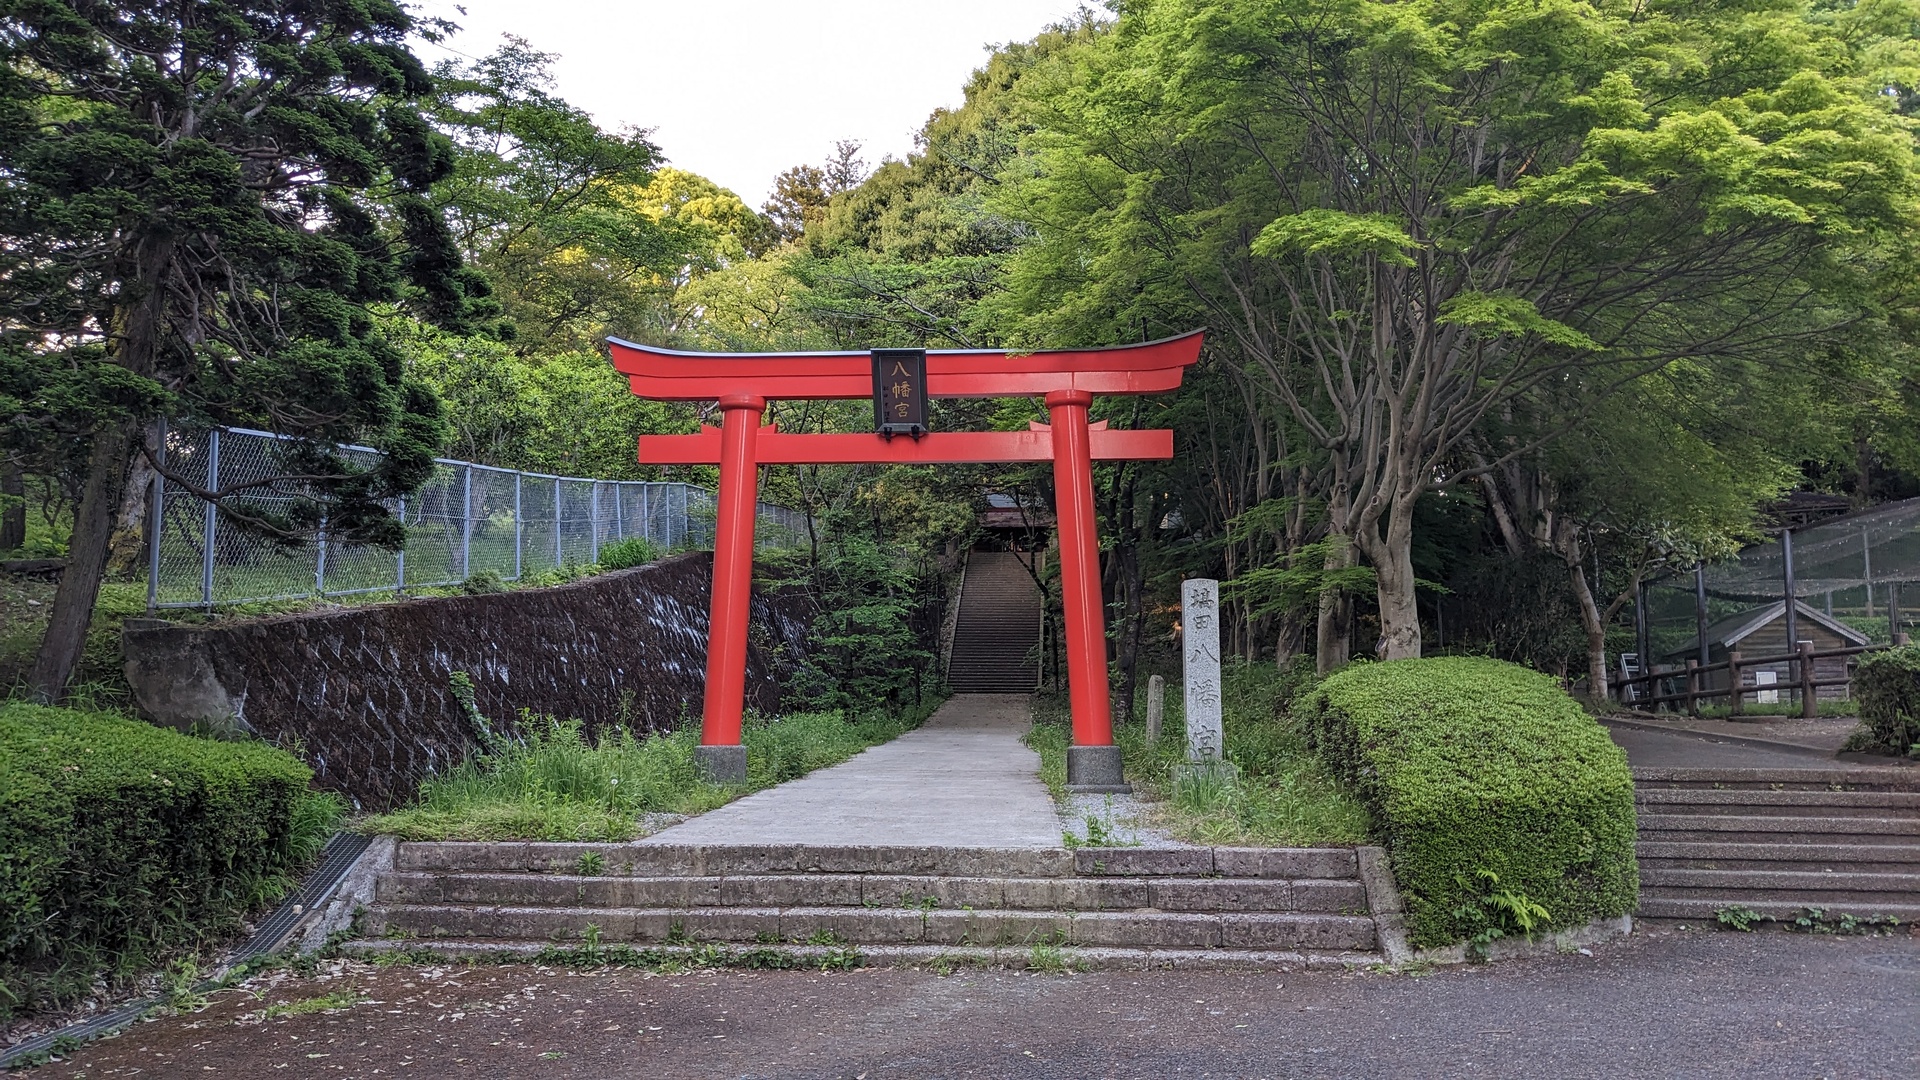 Utsunomiya, at a shrine